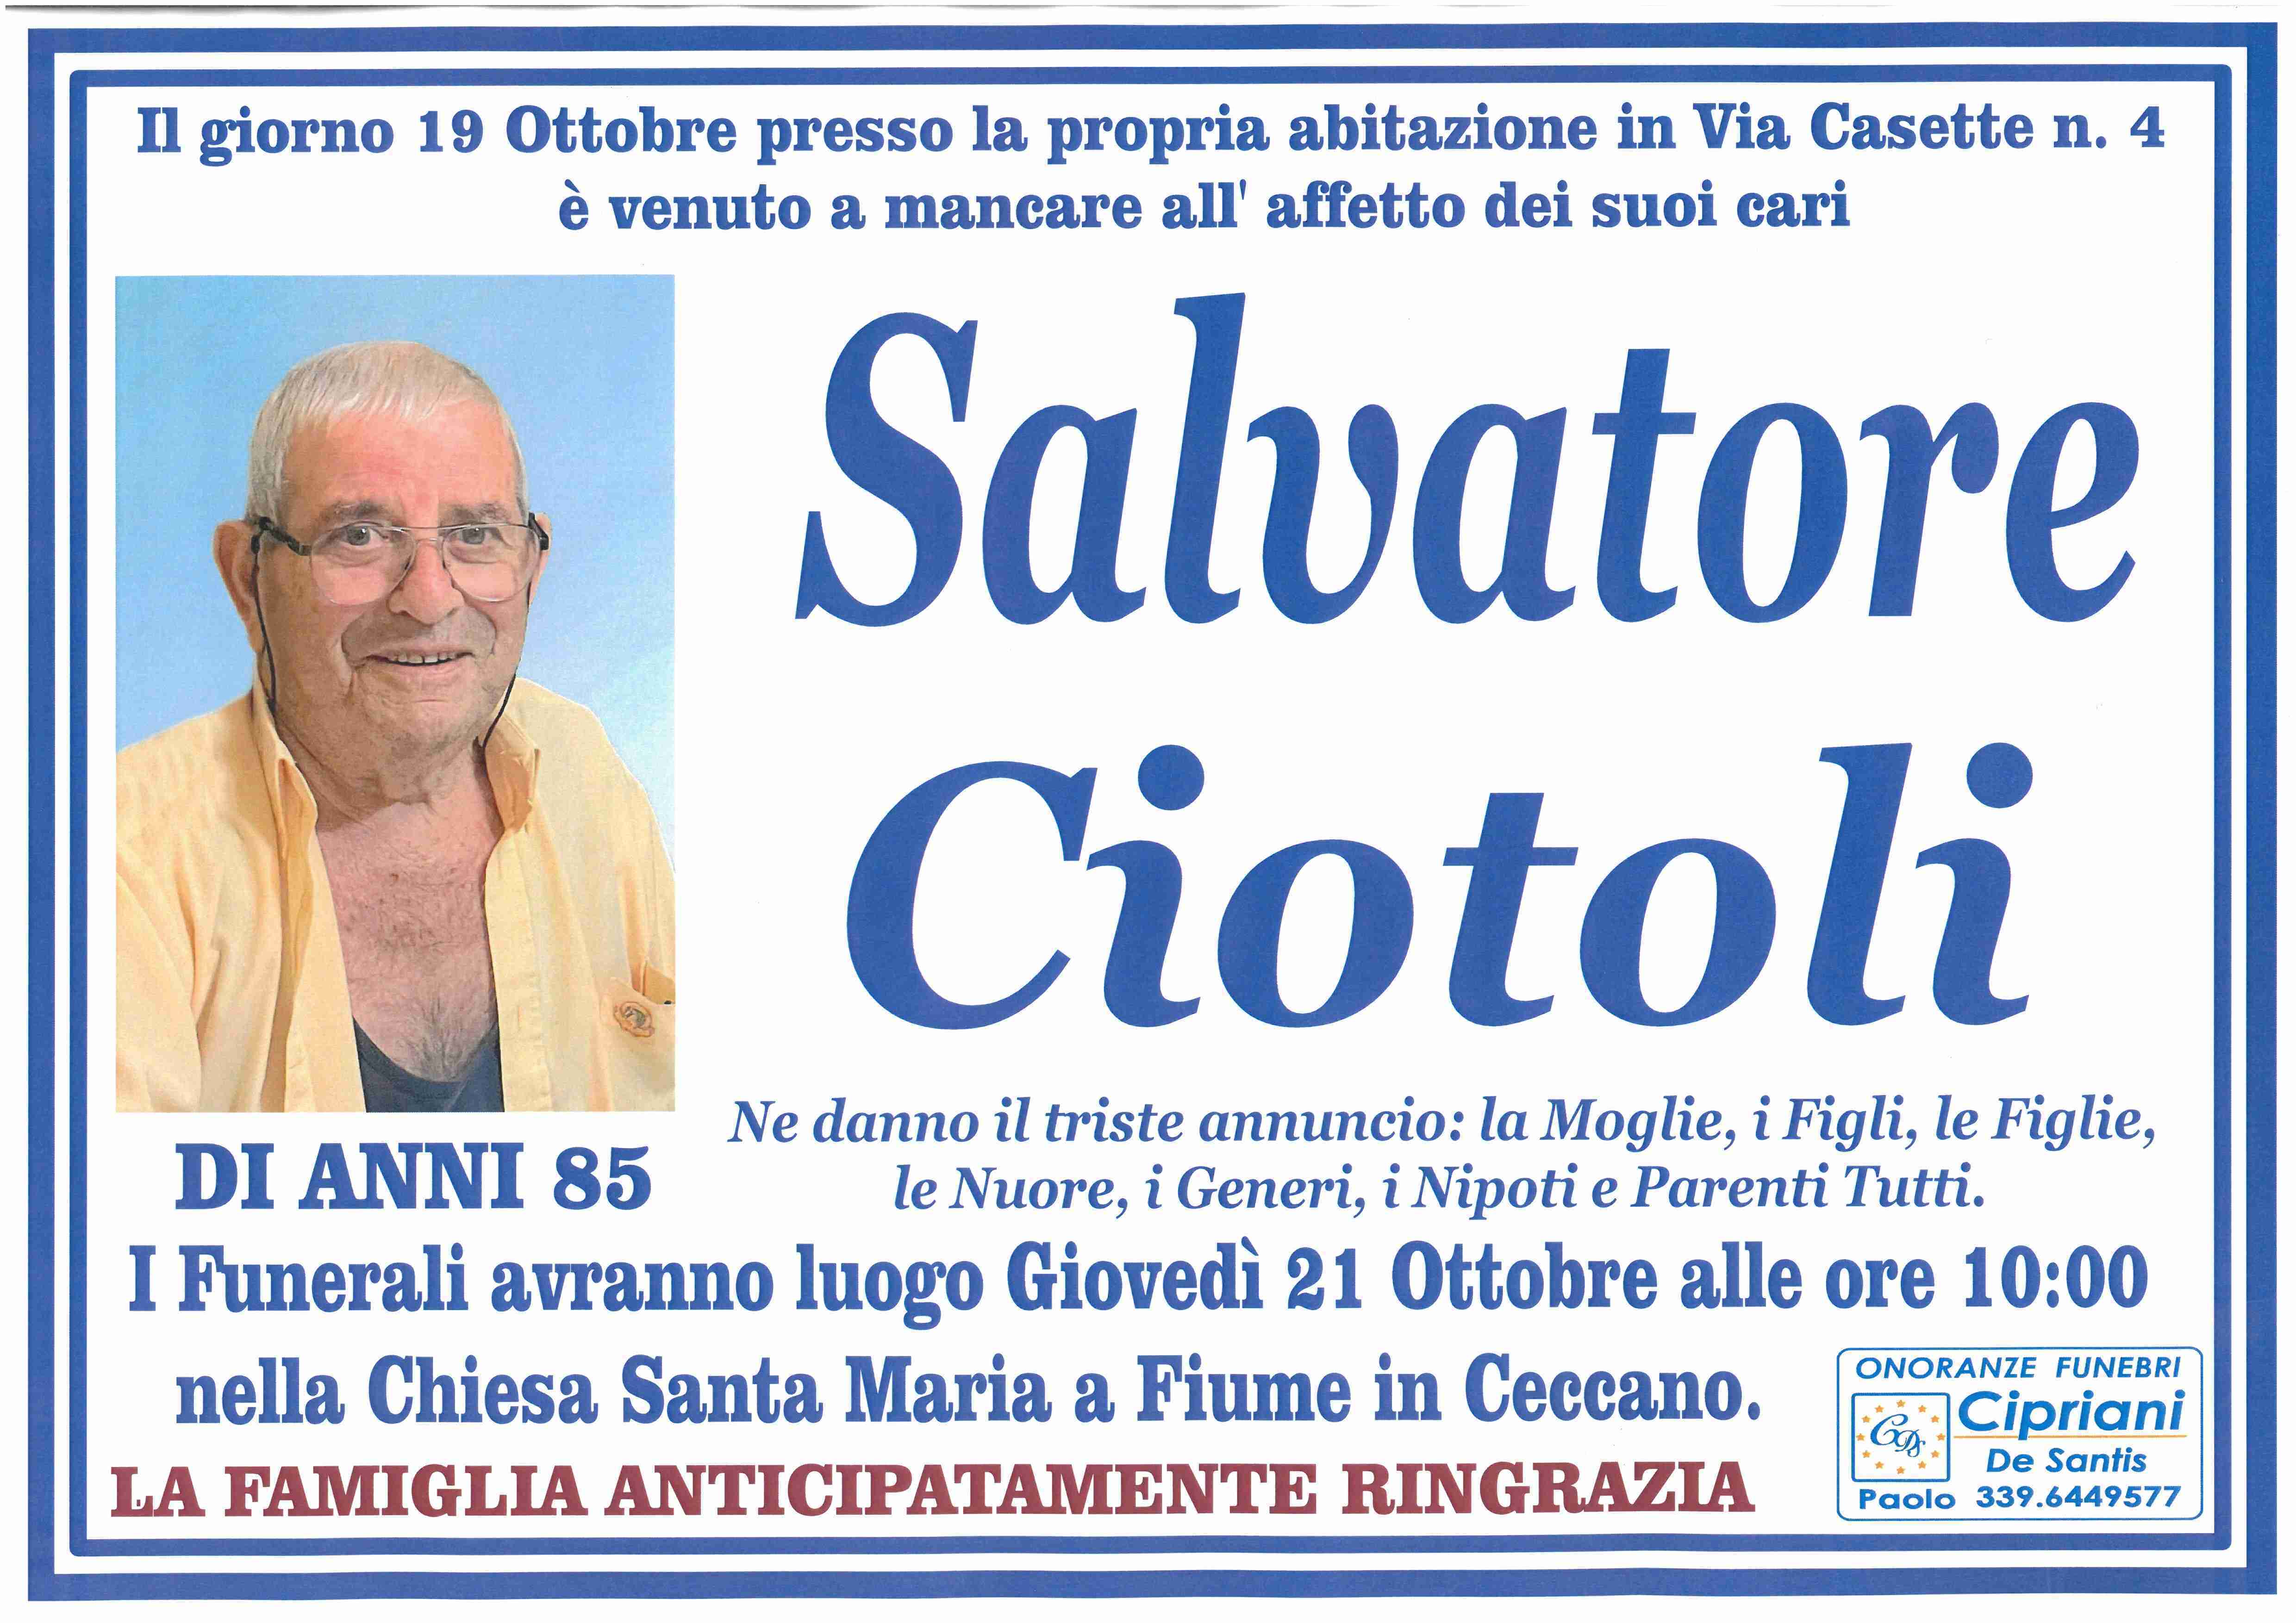 Salvatore Ciotoli